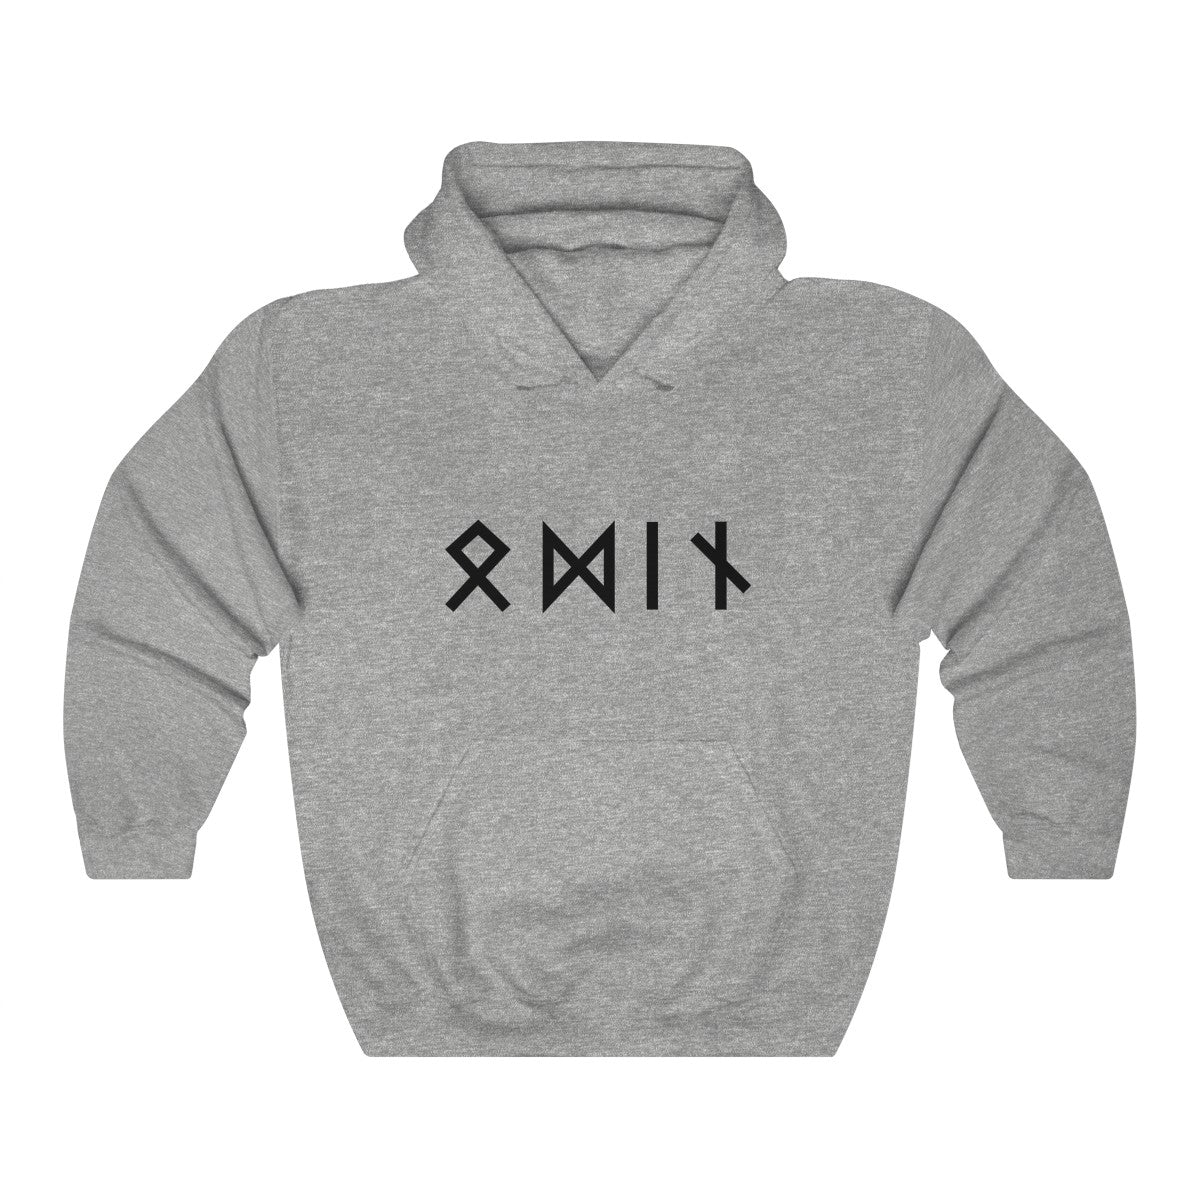 Custom Viking Hoodie Name in Runes Norse Sweatshirt